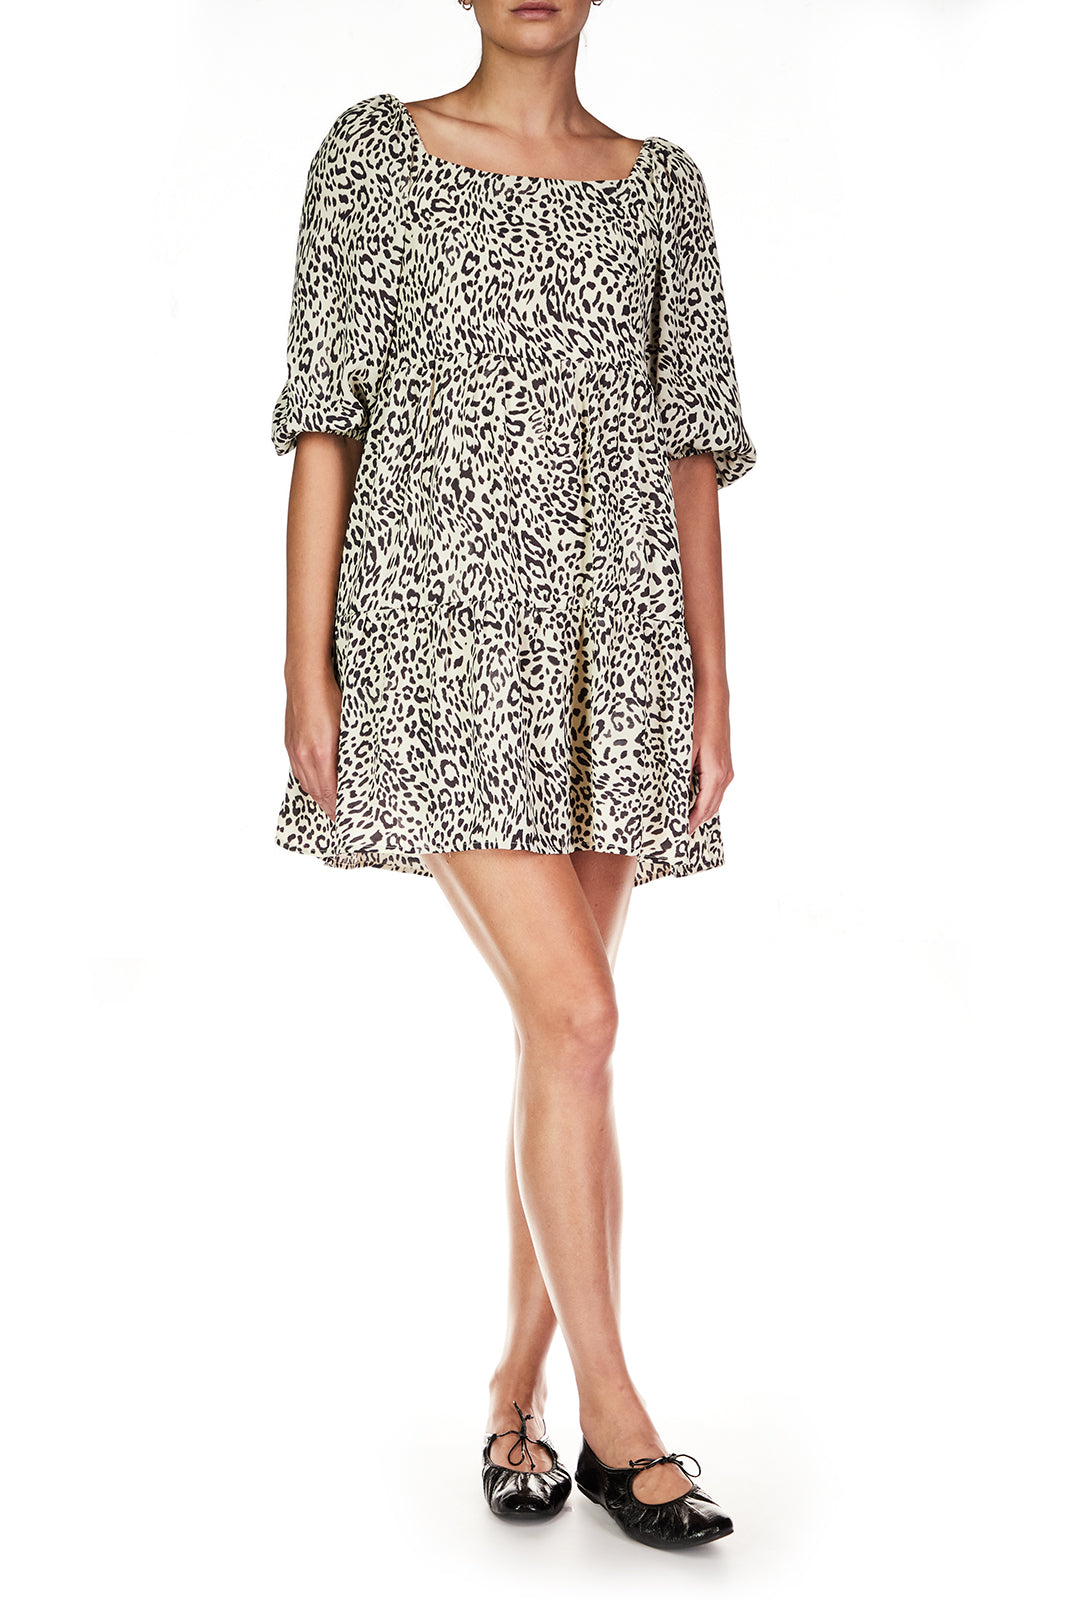 Leopard Print Dress Apex Ethical Boutique